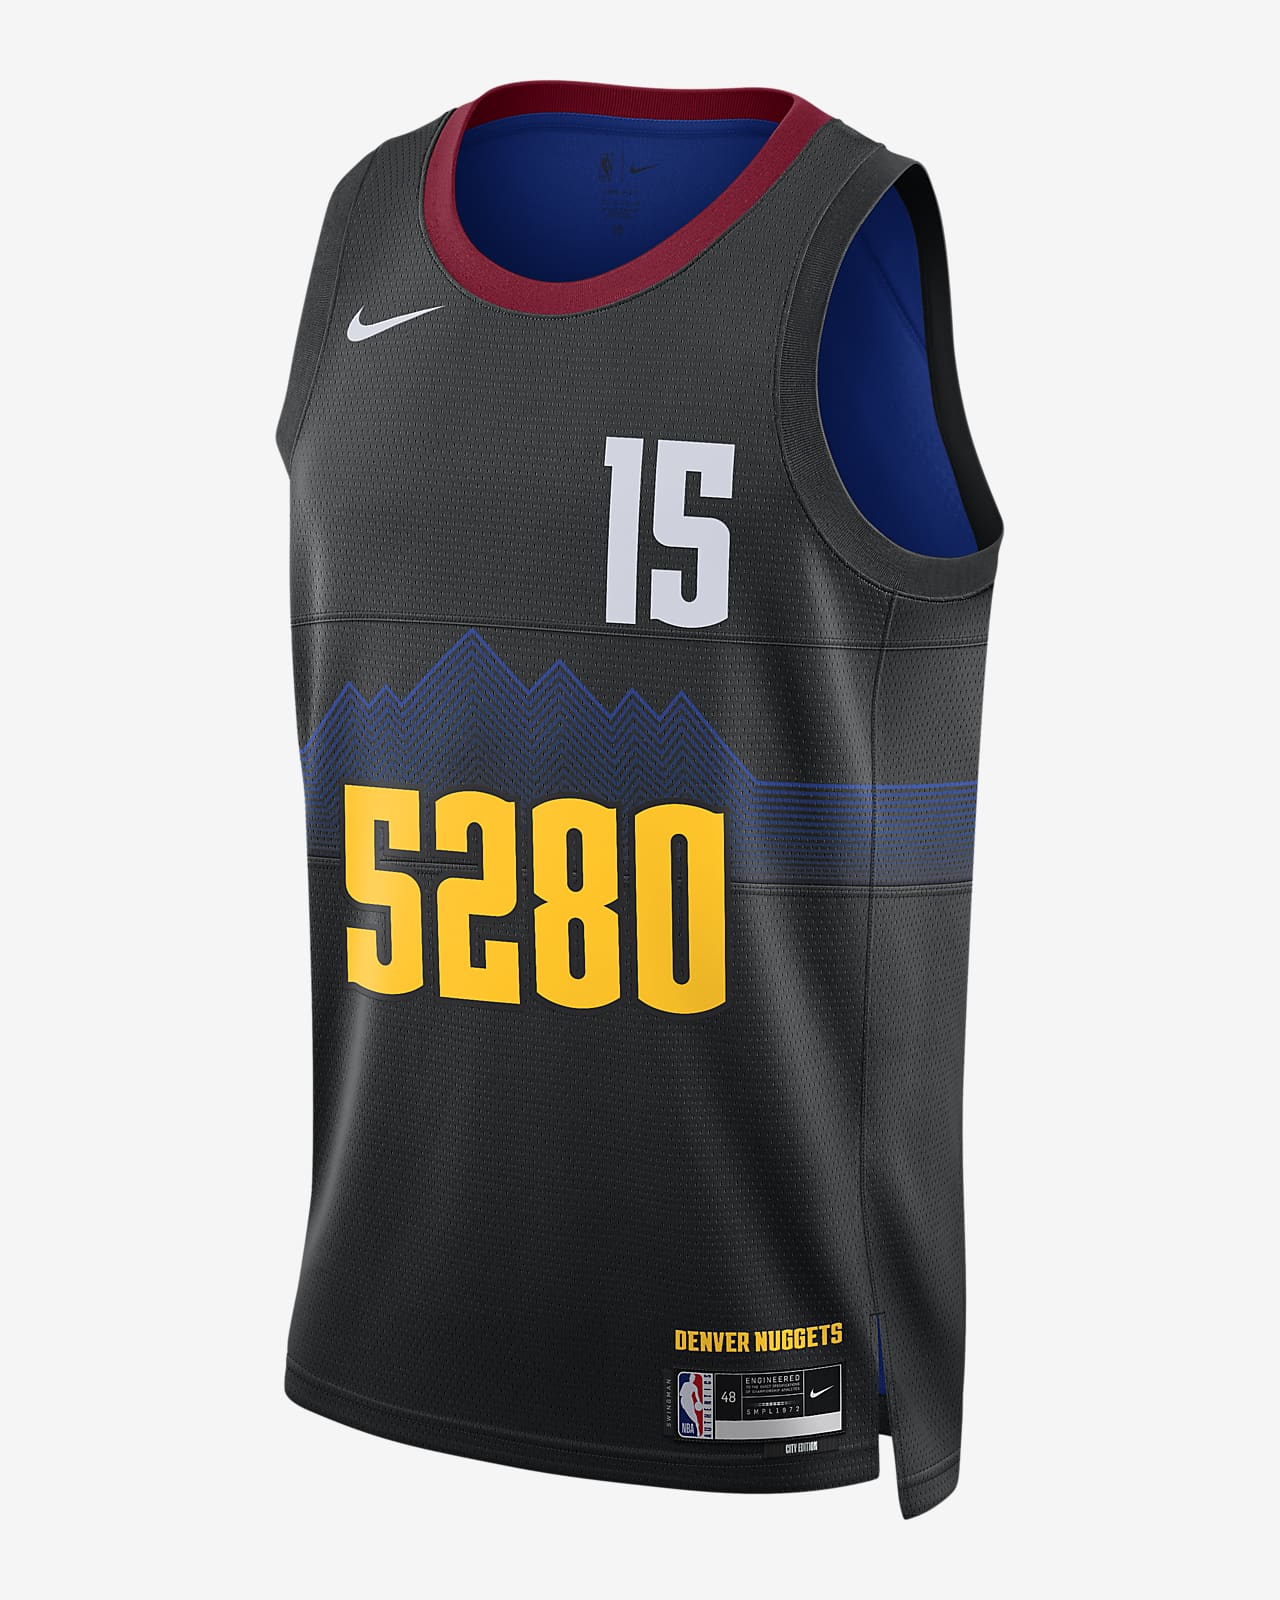 2023/24 赛季丹佛掘金队 (Nikola Jokic) City Edition Nike Dri-FIT NBA Swingman Jersey 男子速干球衣